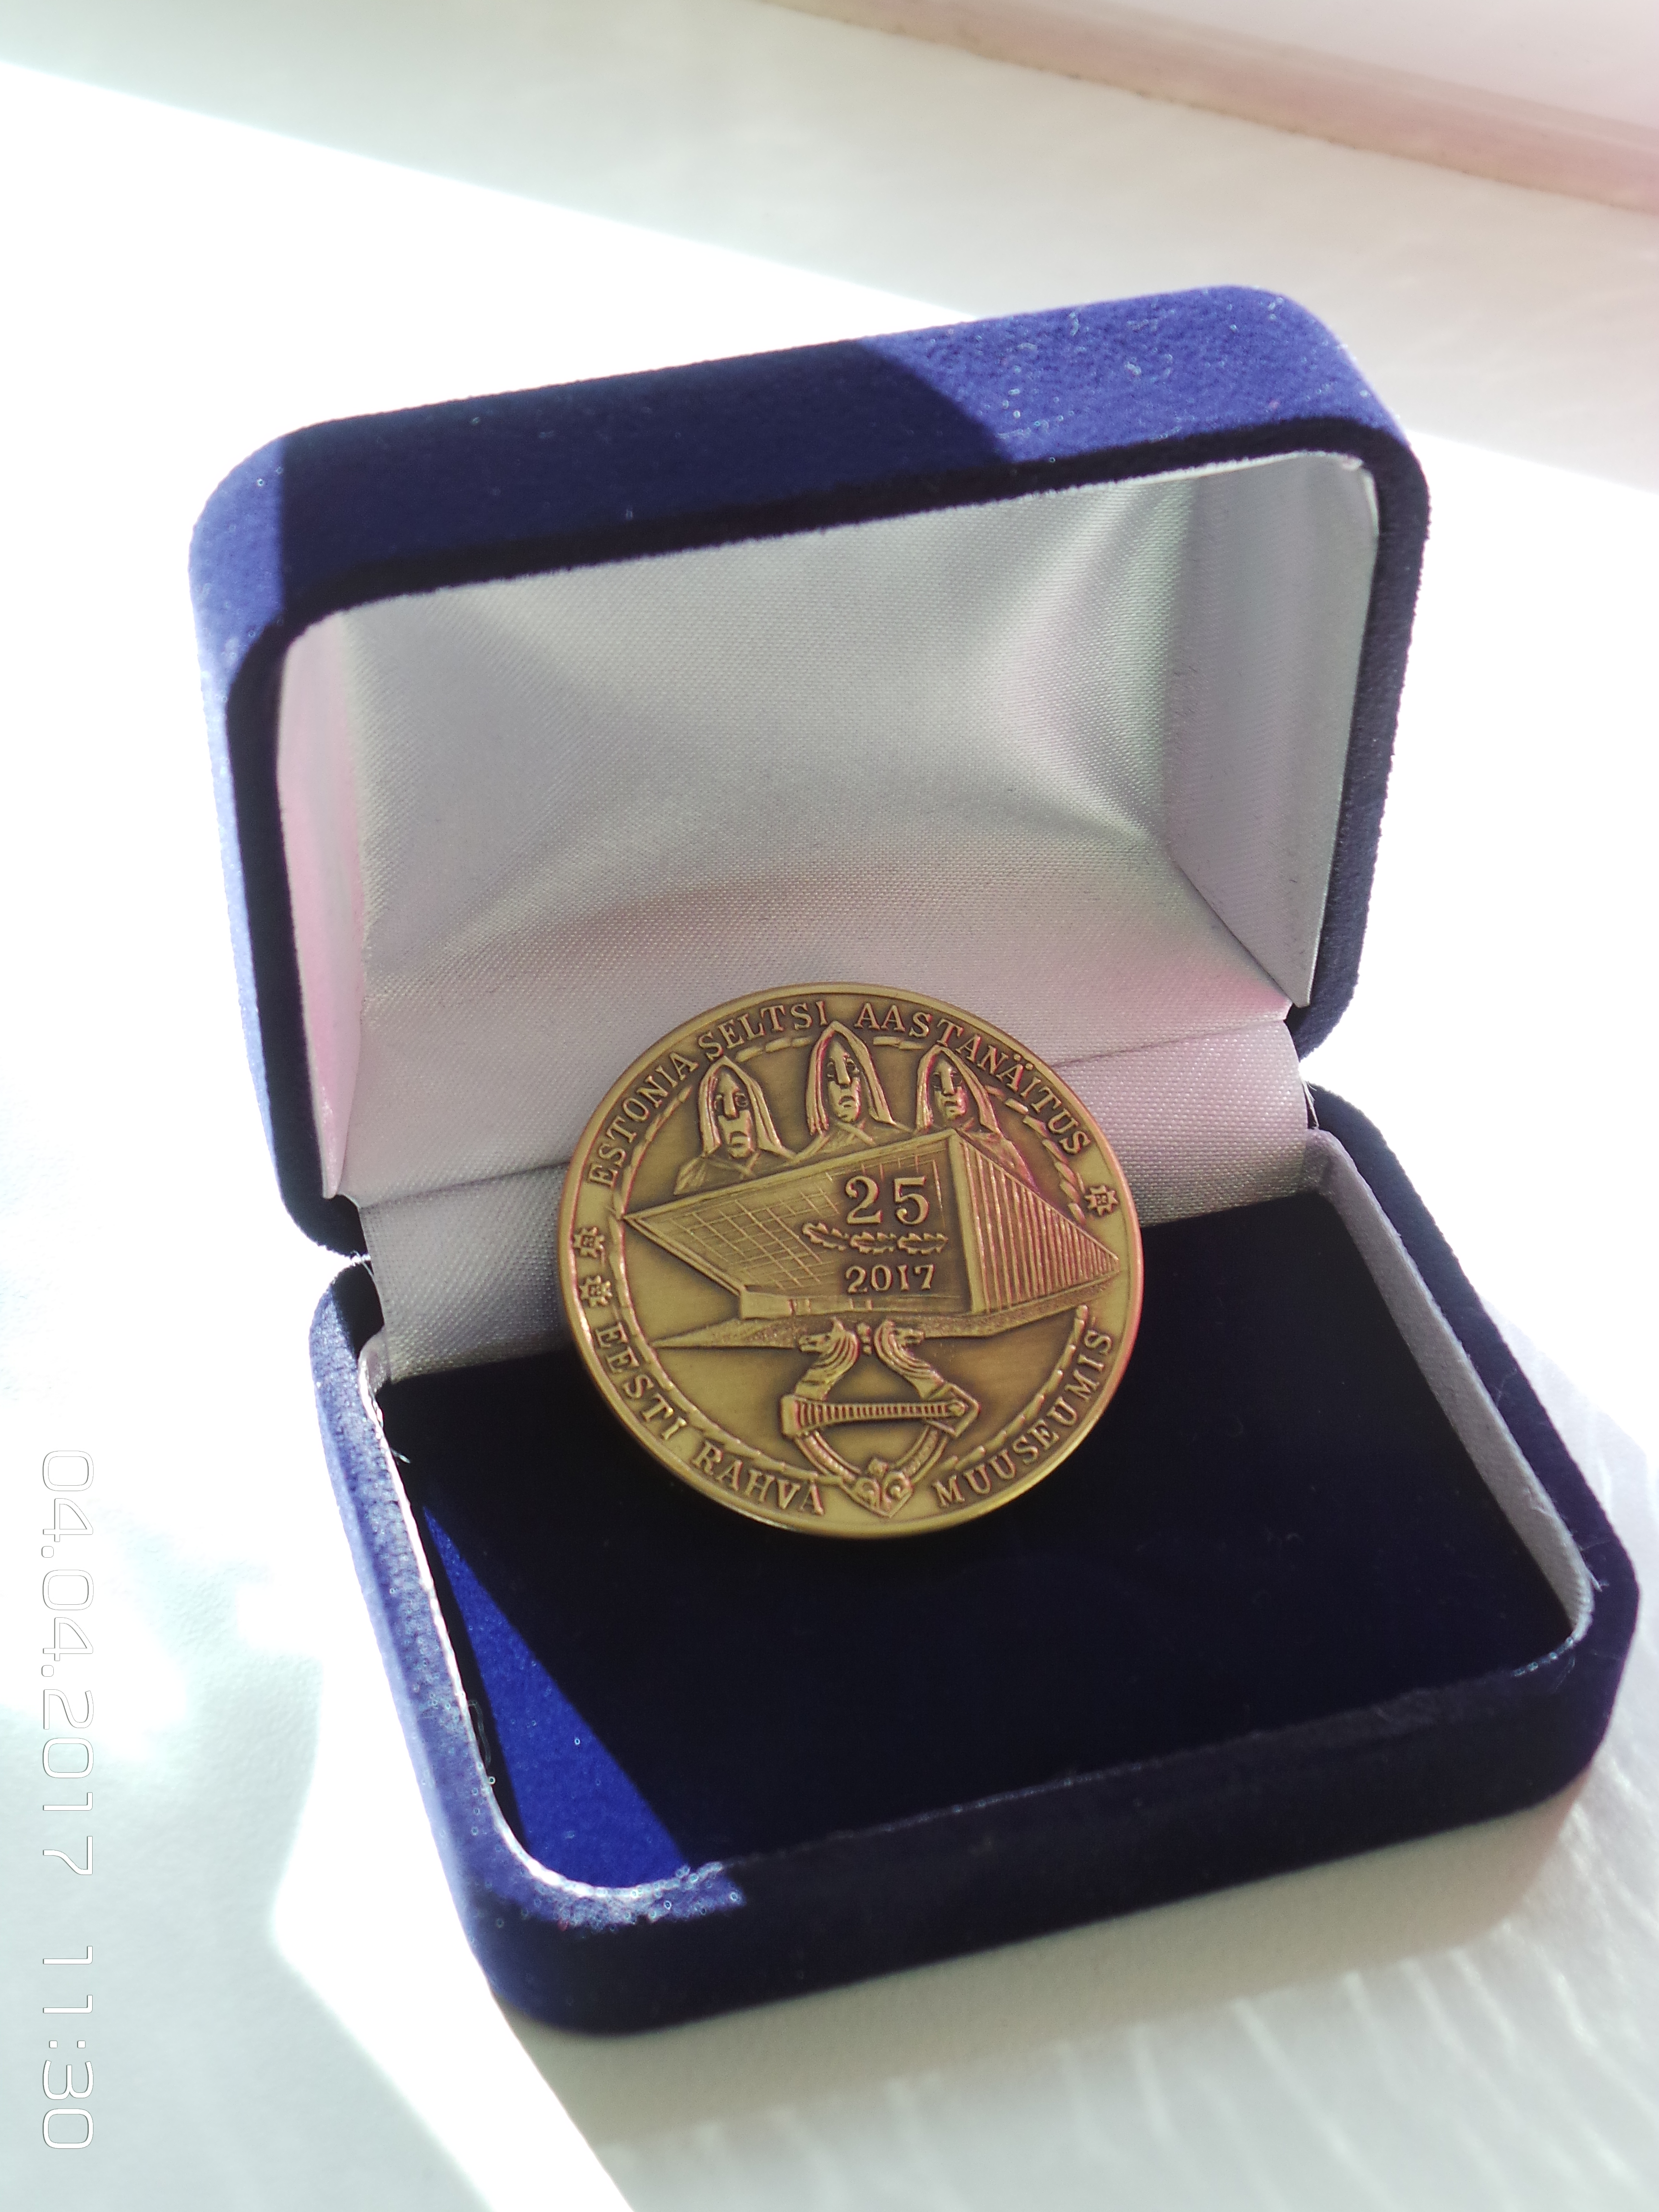 Tartu 2017 medal